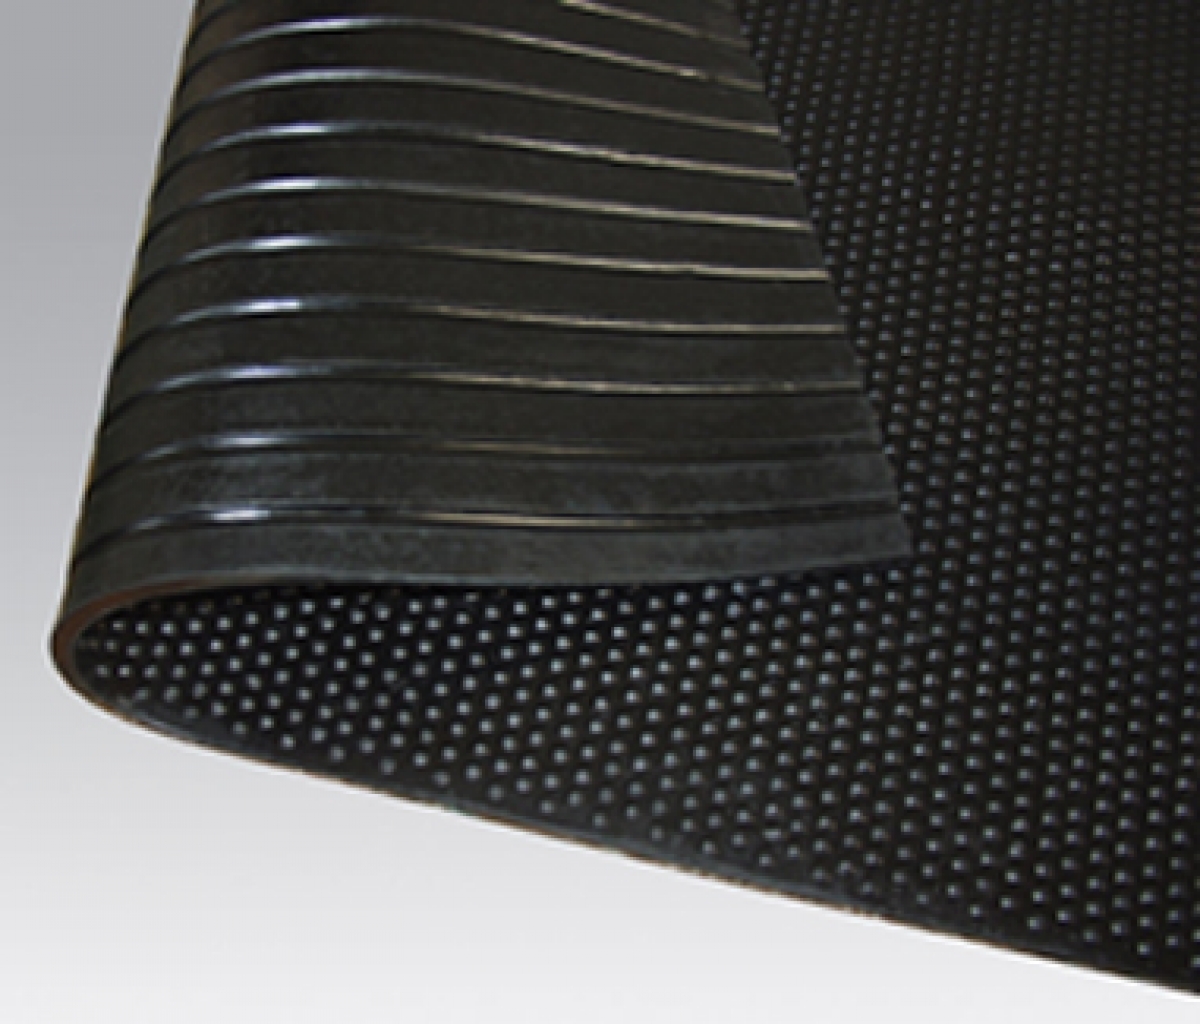 Afscheid handleiding verraad Stalmat volrubber mat 1220 x 1830 x 17 mm, urinebestendig, ideaal geschikt  voor rubberen mat met drainage kanalen voor stallen | Webshop Agrodieren